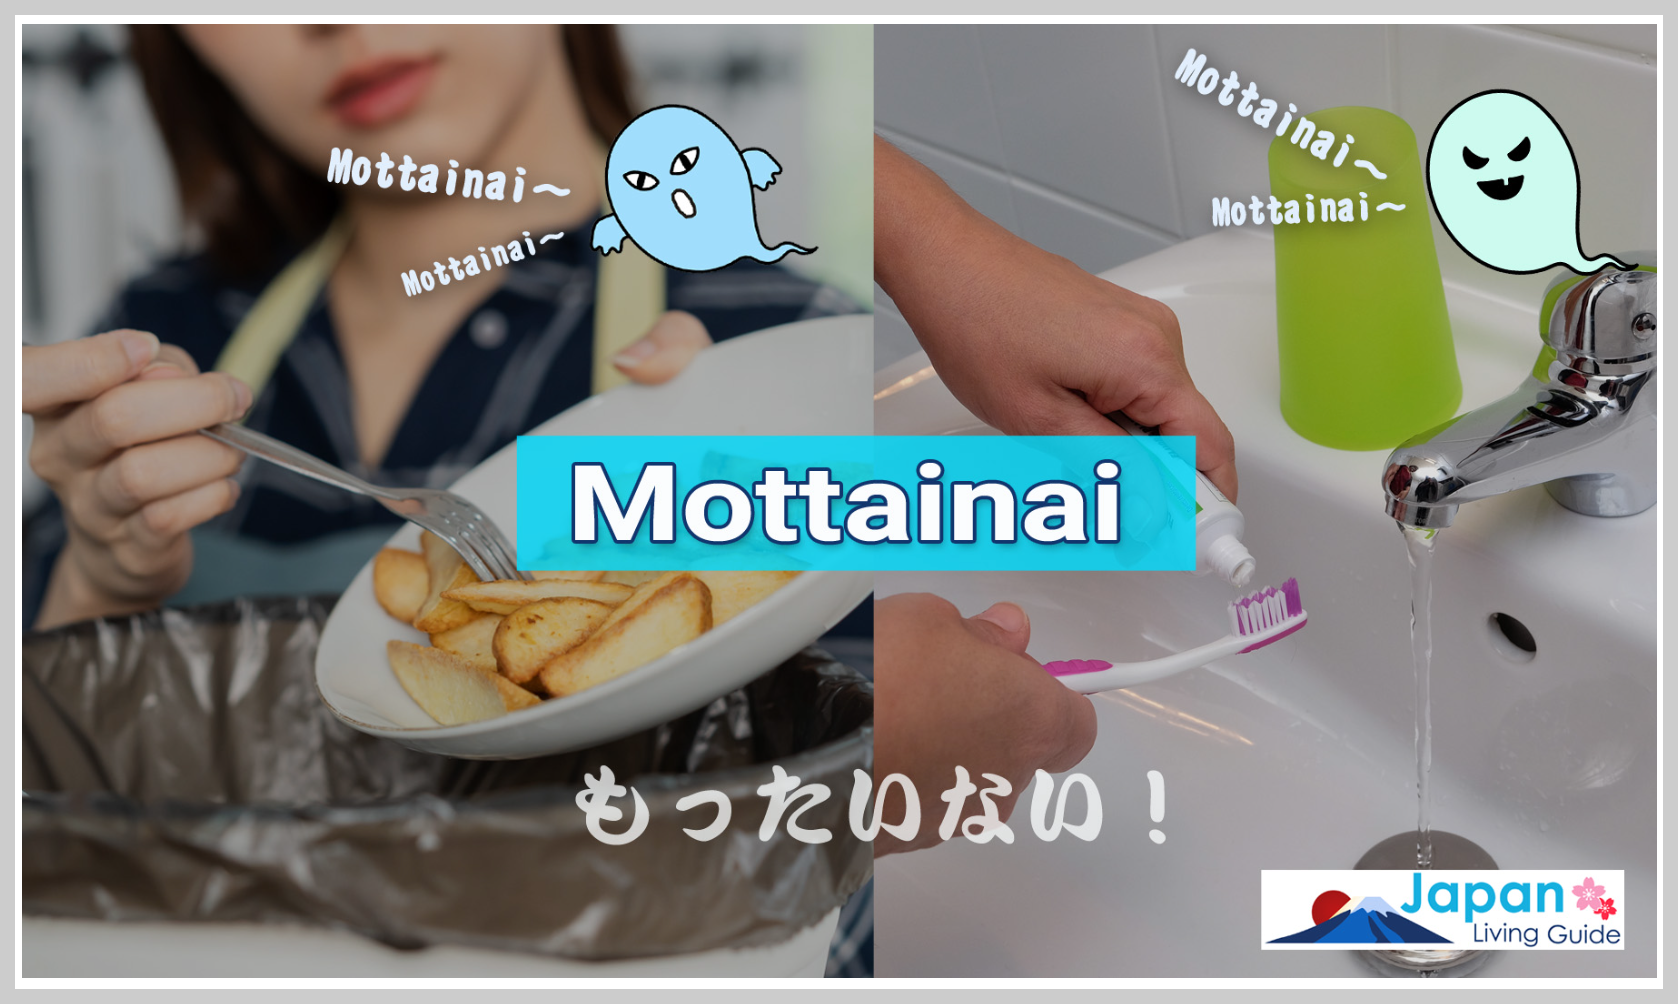 일본-음식물-쓰레기-줄이기-캠페인-사례-Mottainai-캠페인